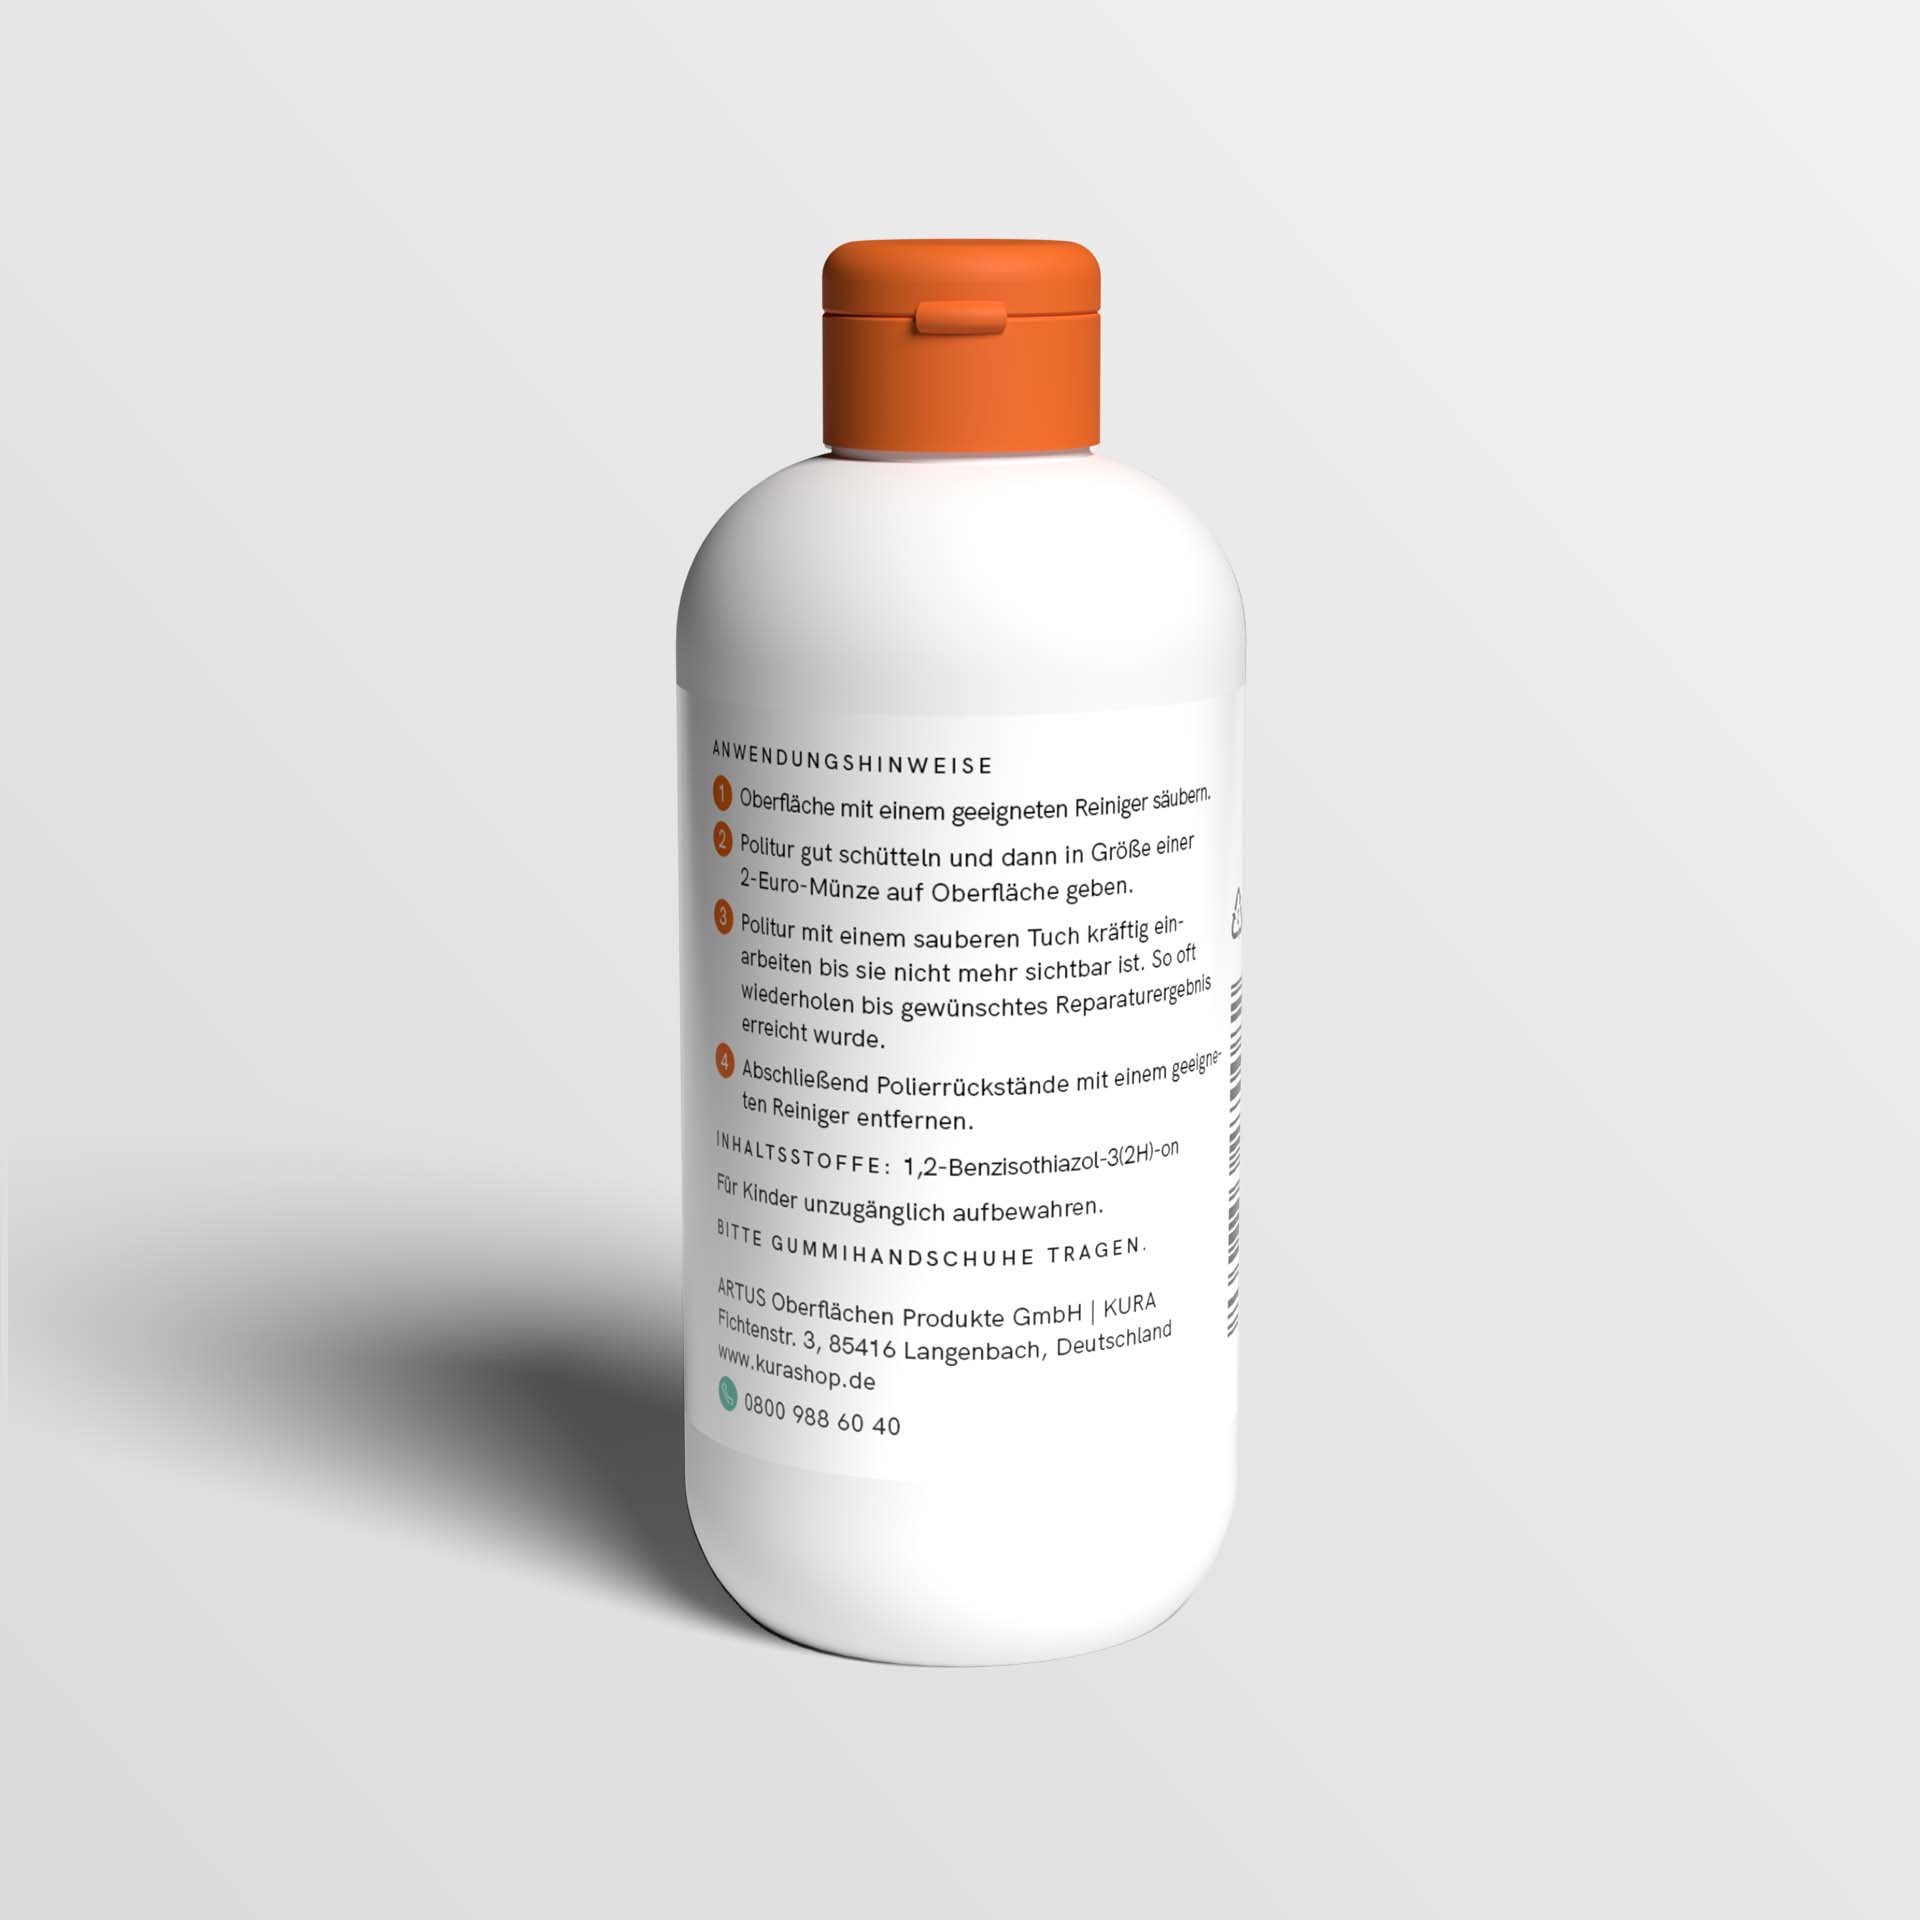 Unsere weiße Flasche mit orangenem Deckel für die Politur Glas fasst 200 Milliliter